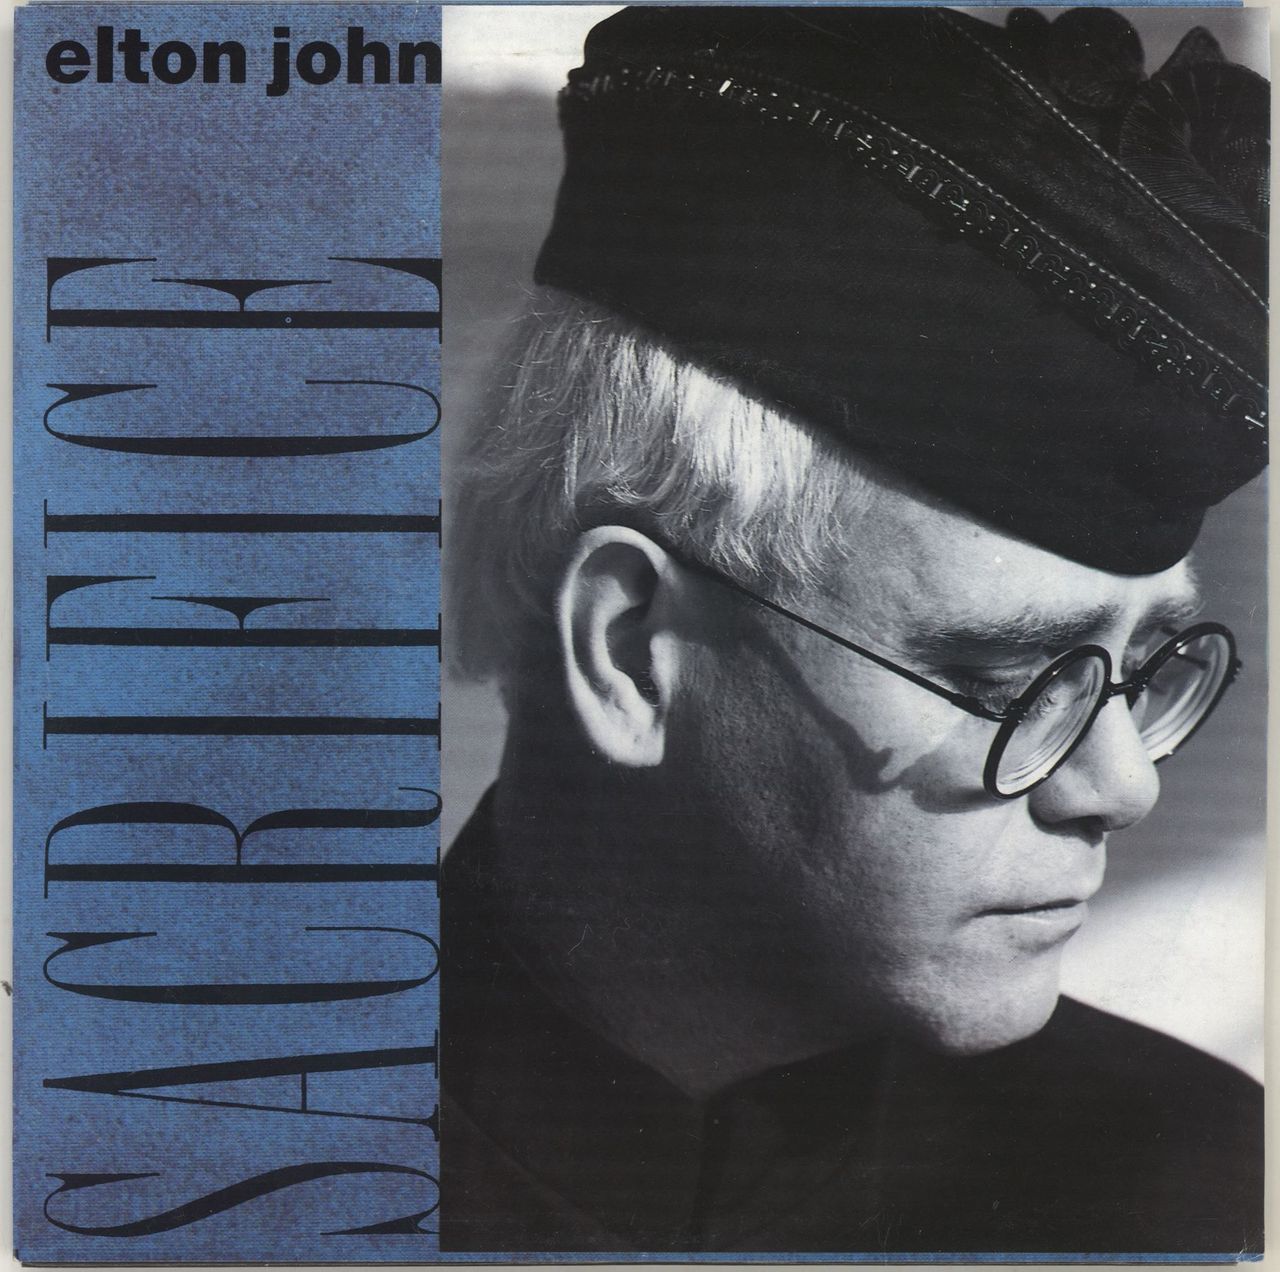 Sacrifice - Elton John 